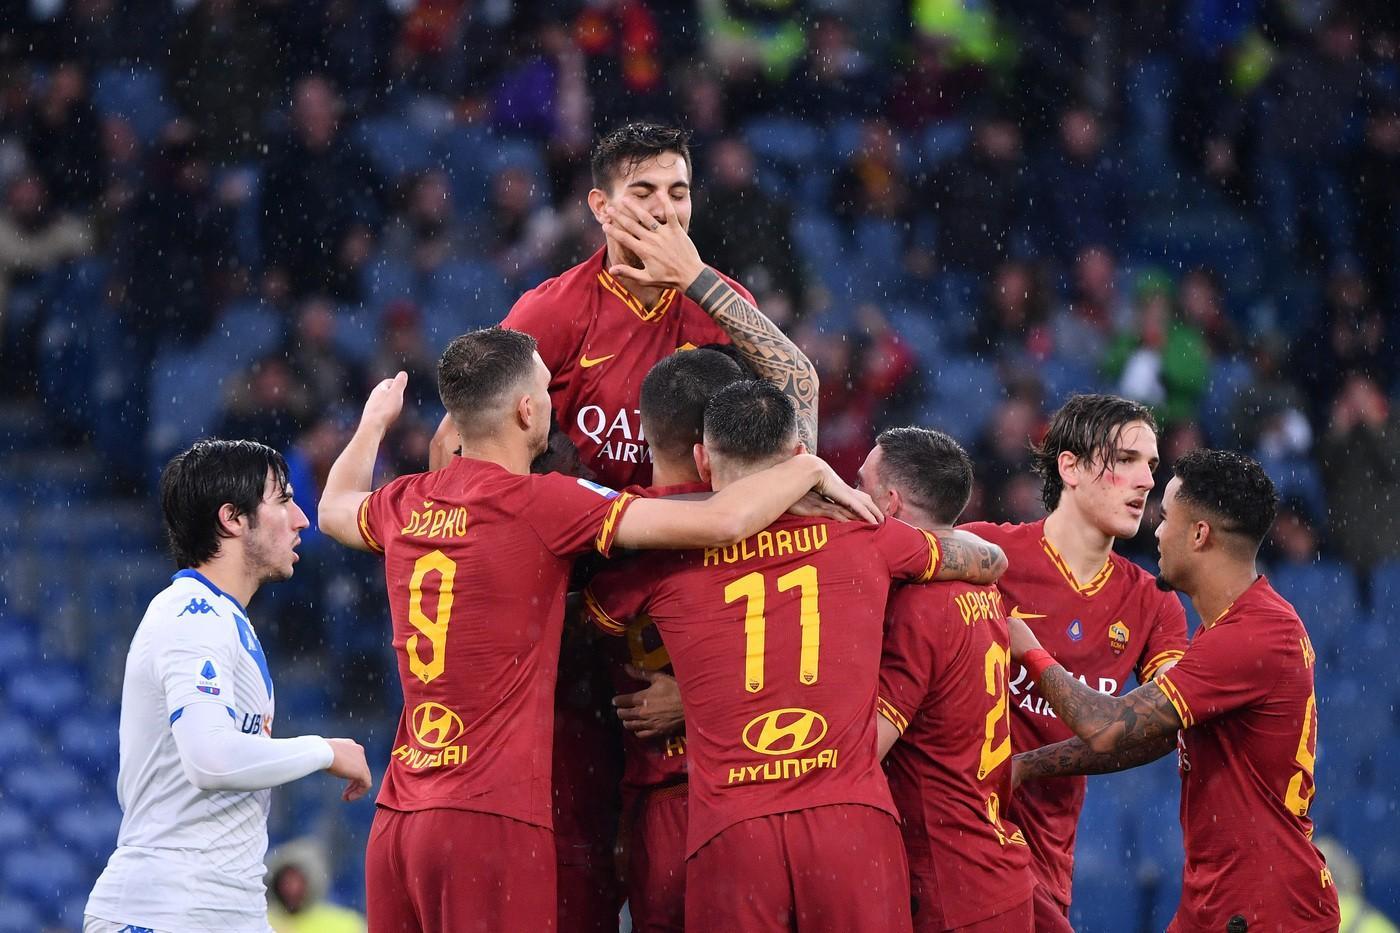 L'esultanza dei giocatori della Roma dopo uno dei gol segnati contro il Brescia, di LaPresse